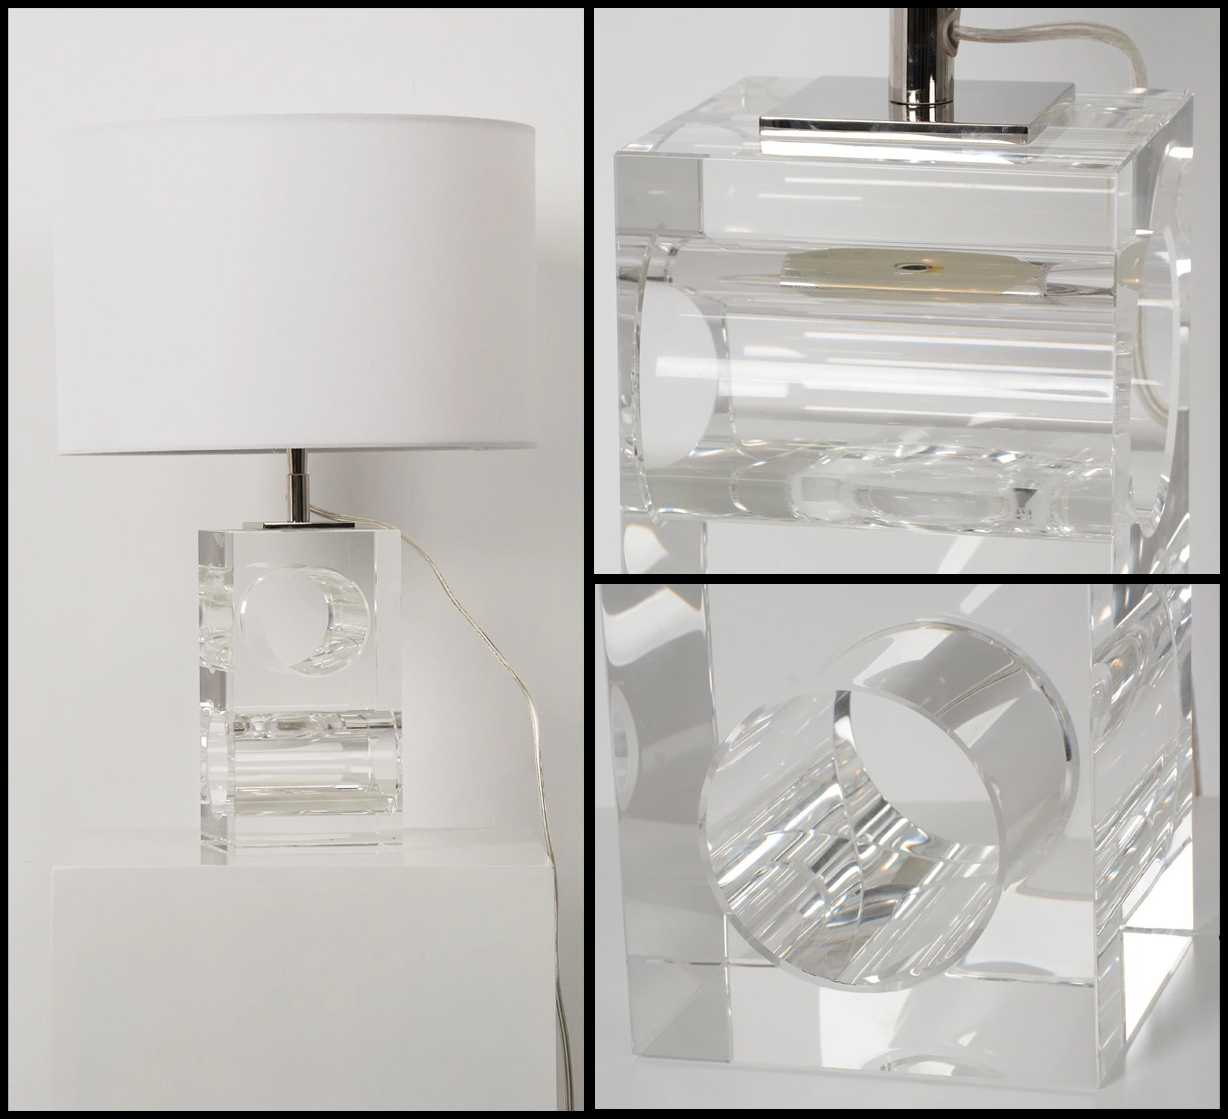 Настольная лампа Delight Collection Crystal Table Lamp BRTL3204S фото